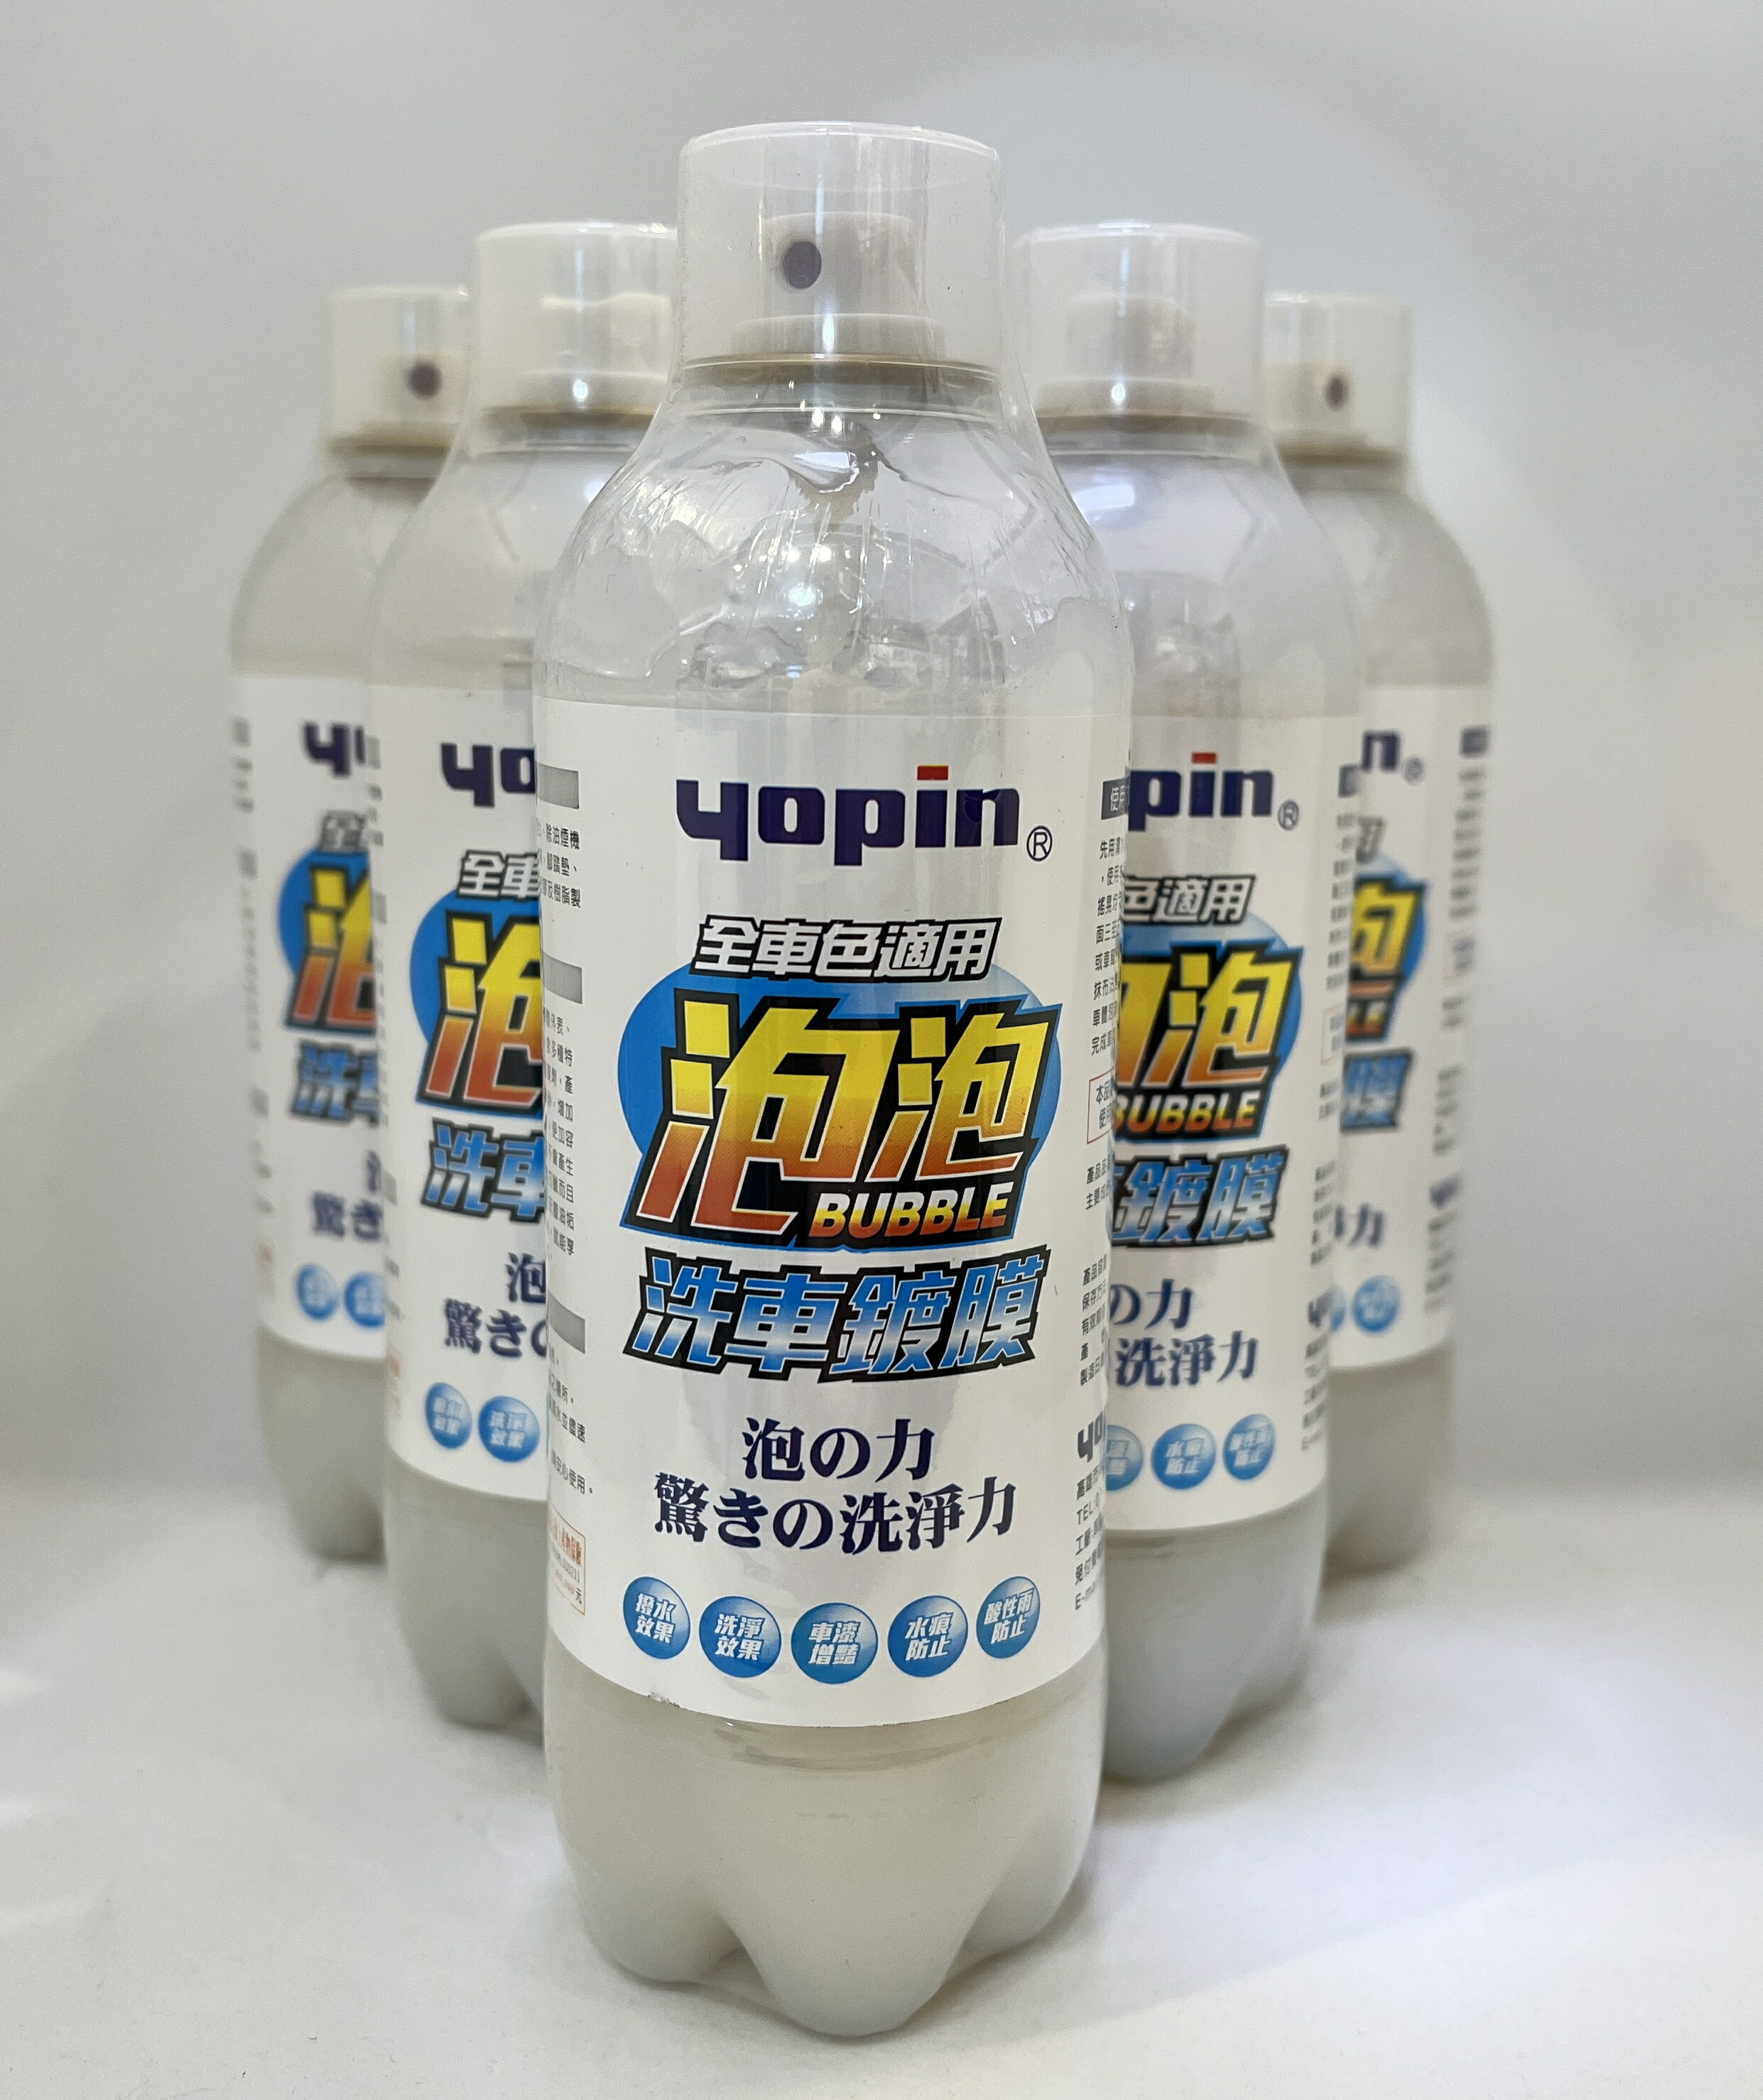 台灣製 終潔者泡泡SPA - 泡泡洗車鍍膜 無需打臘 汽機車家居環境均適合使用